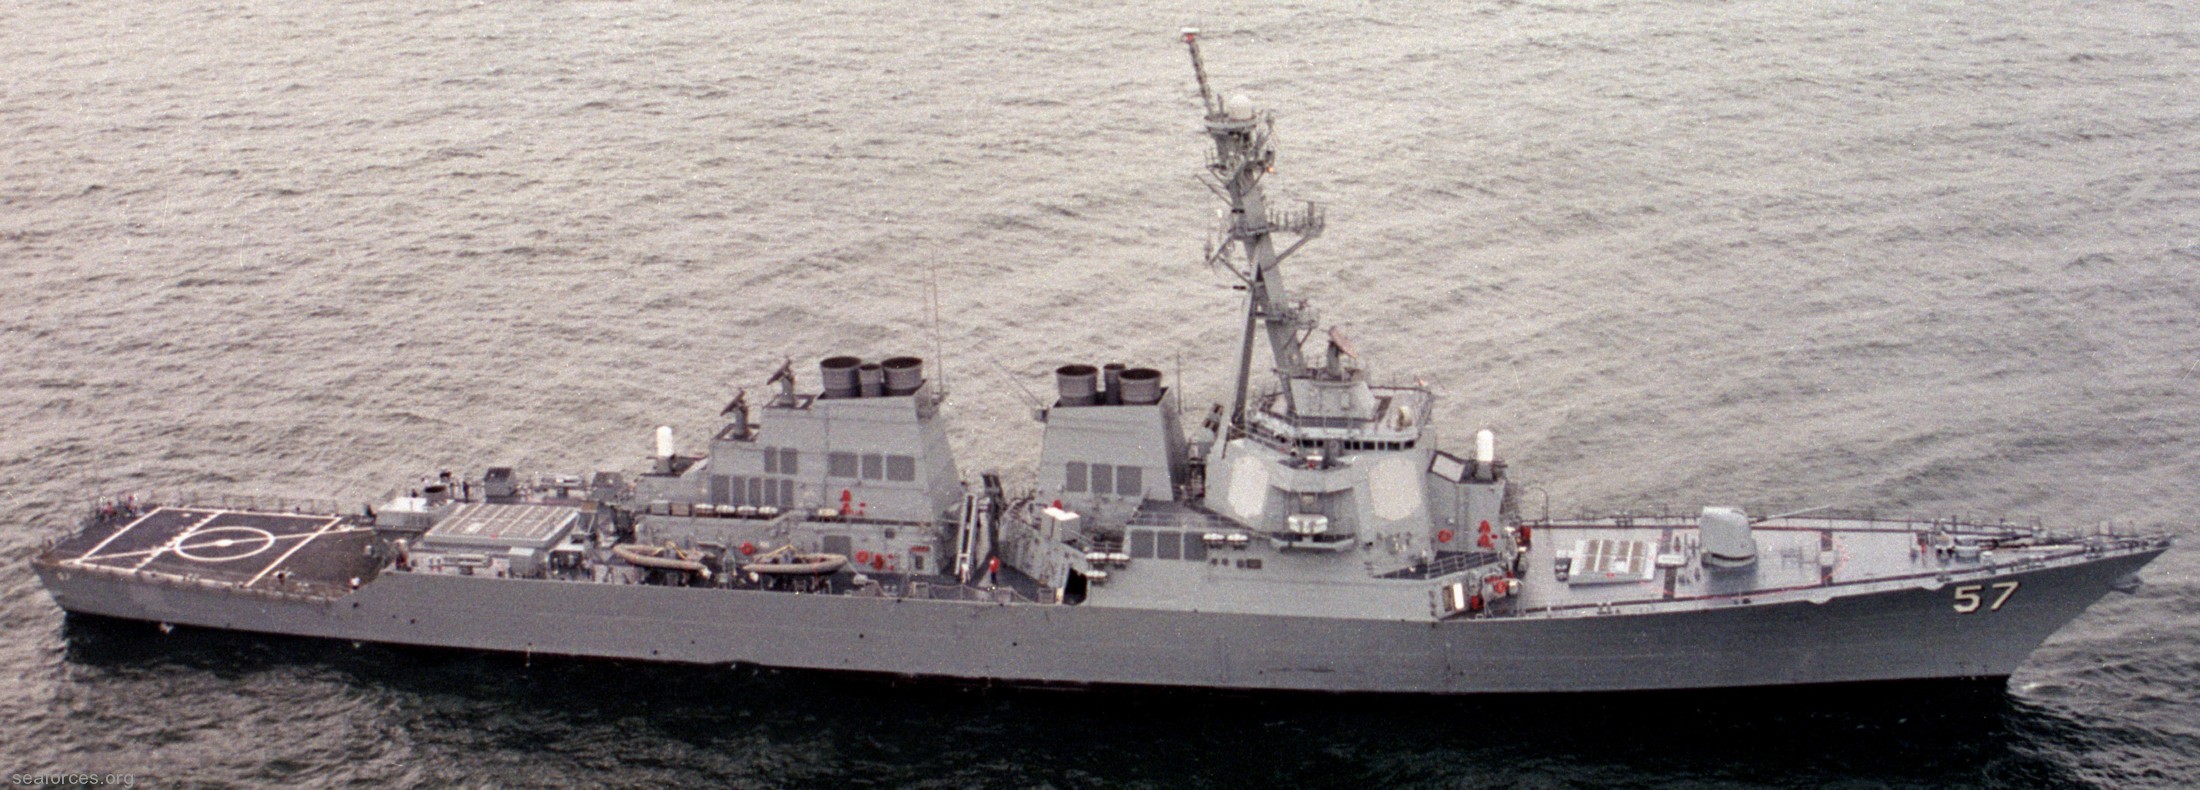 ddg-57 uss mitscher guided missile destroyer us navy 83